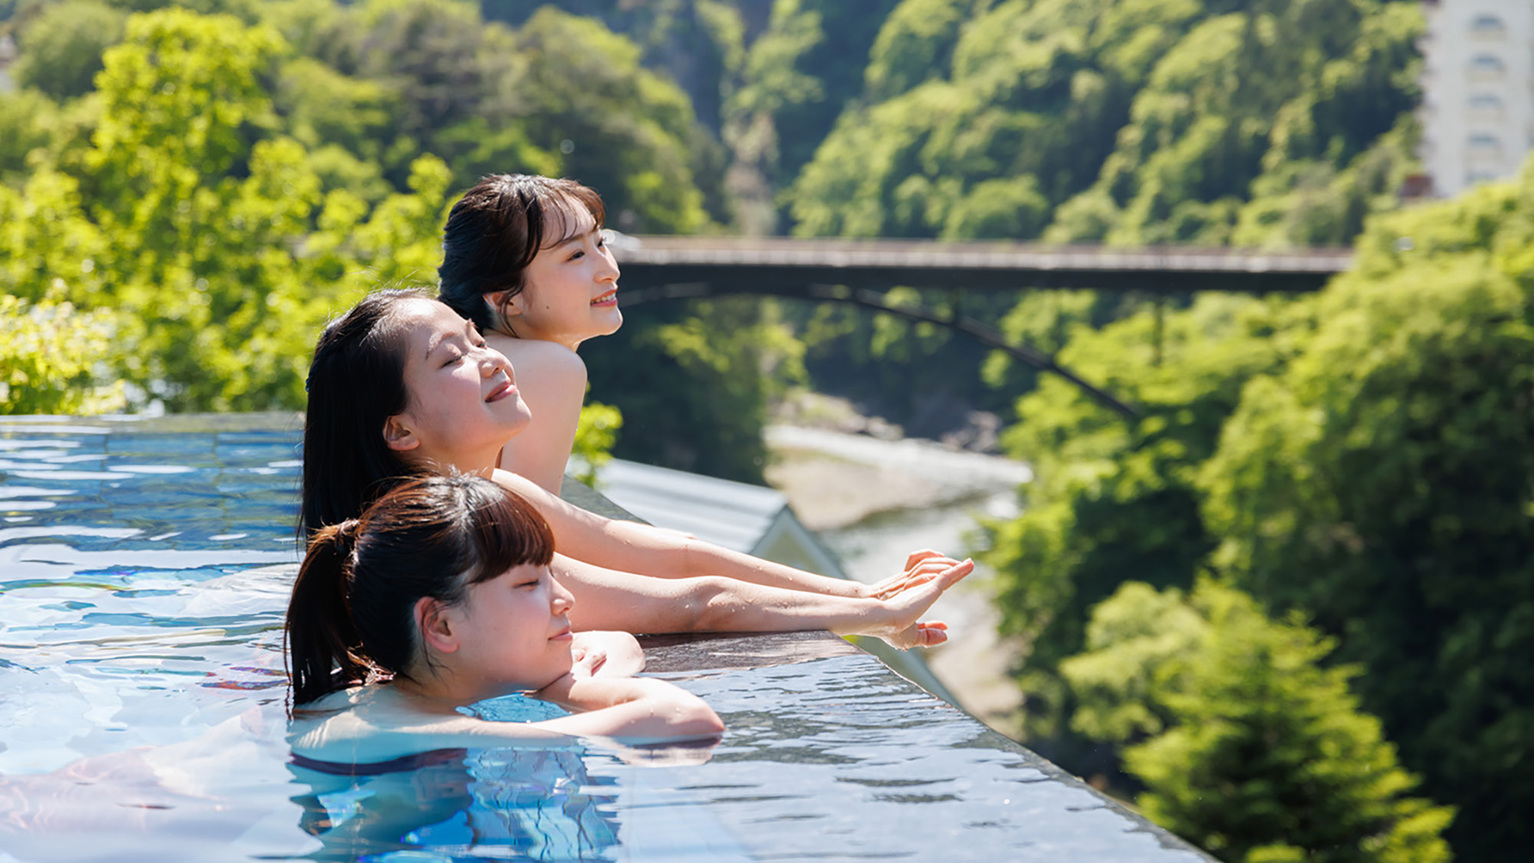 温泉をプールのように水着で楽しむおぷーろ♪きぬ川の眺望とともにご家族でお楽しみいただけます。